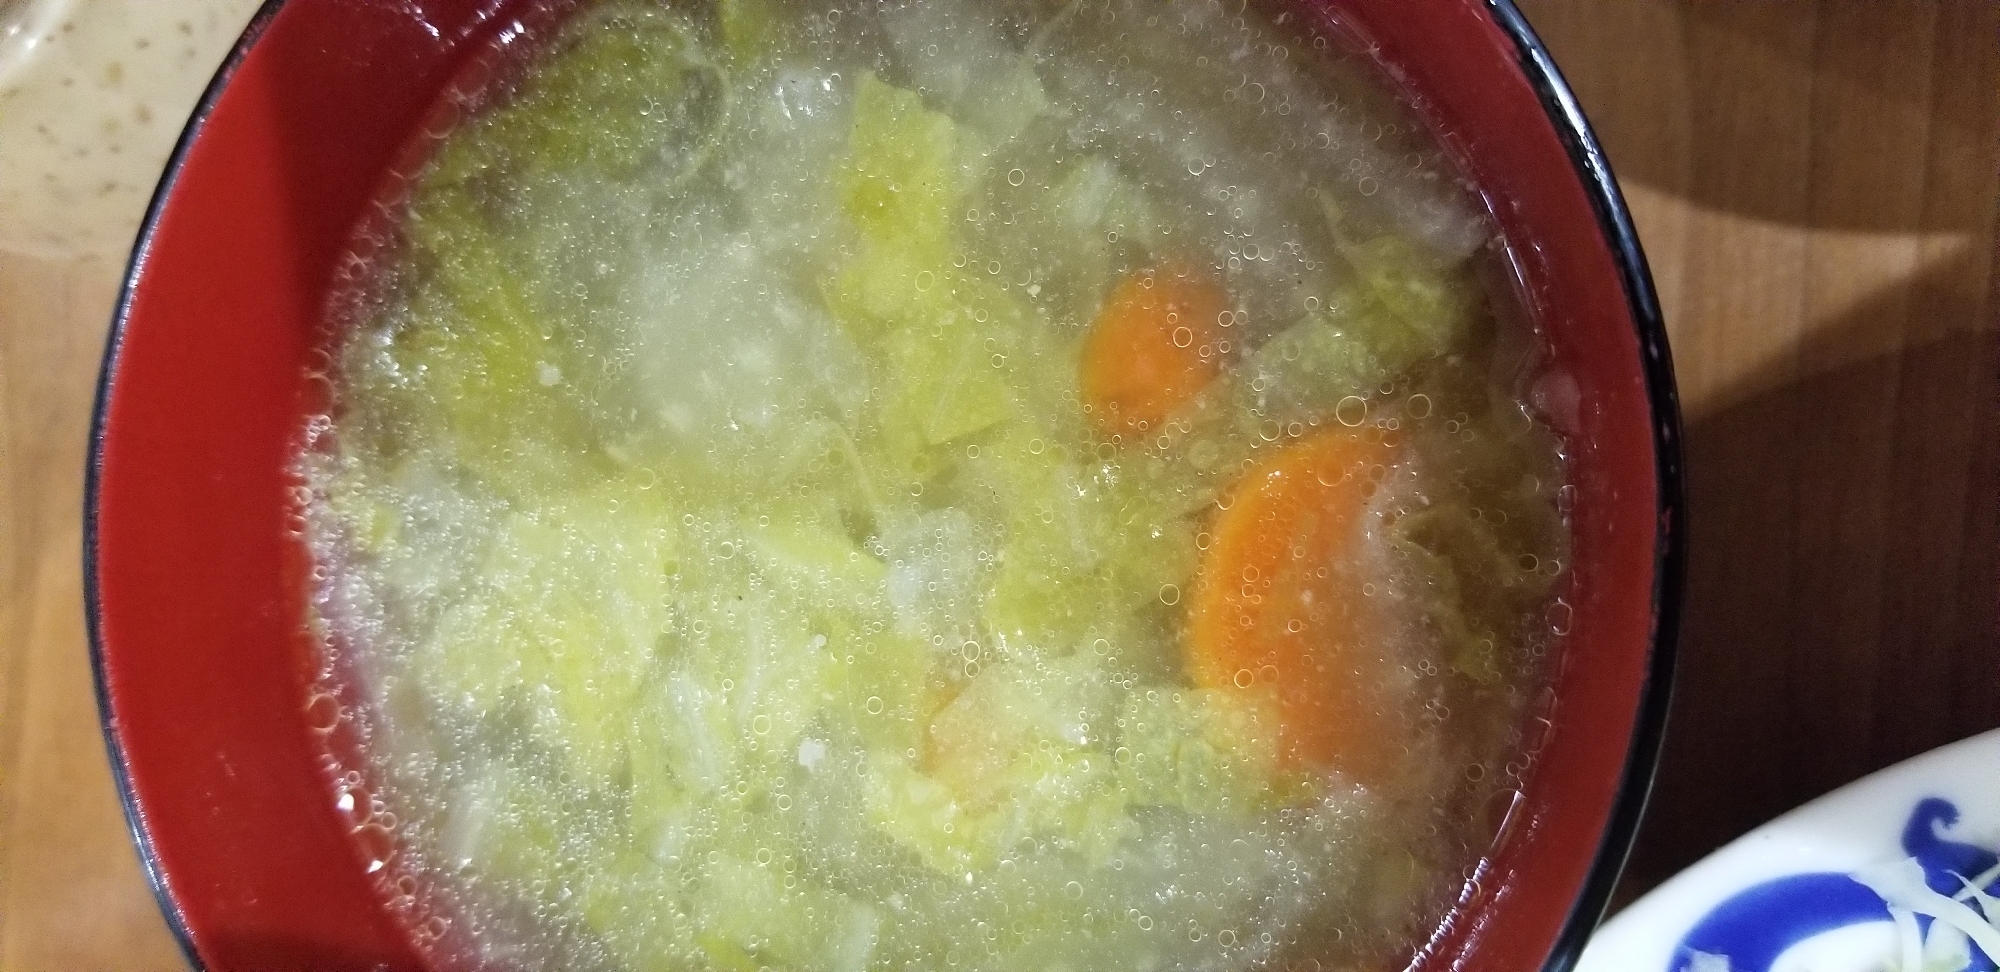 白菜、人参の中華スープ